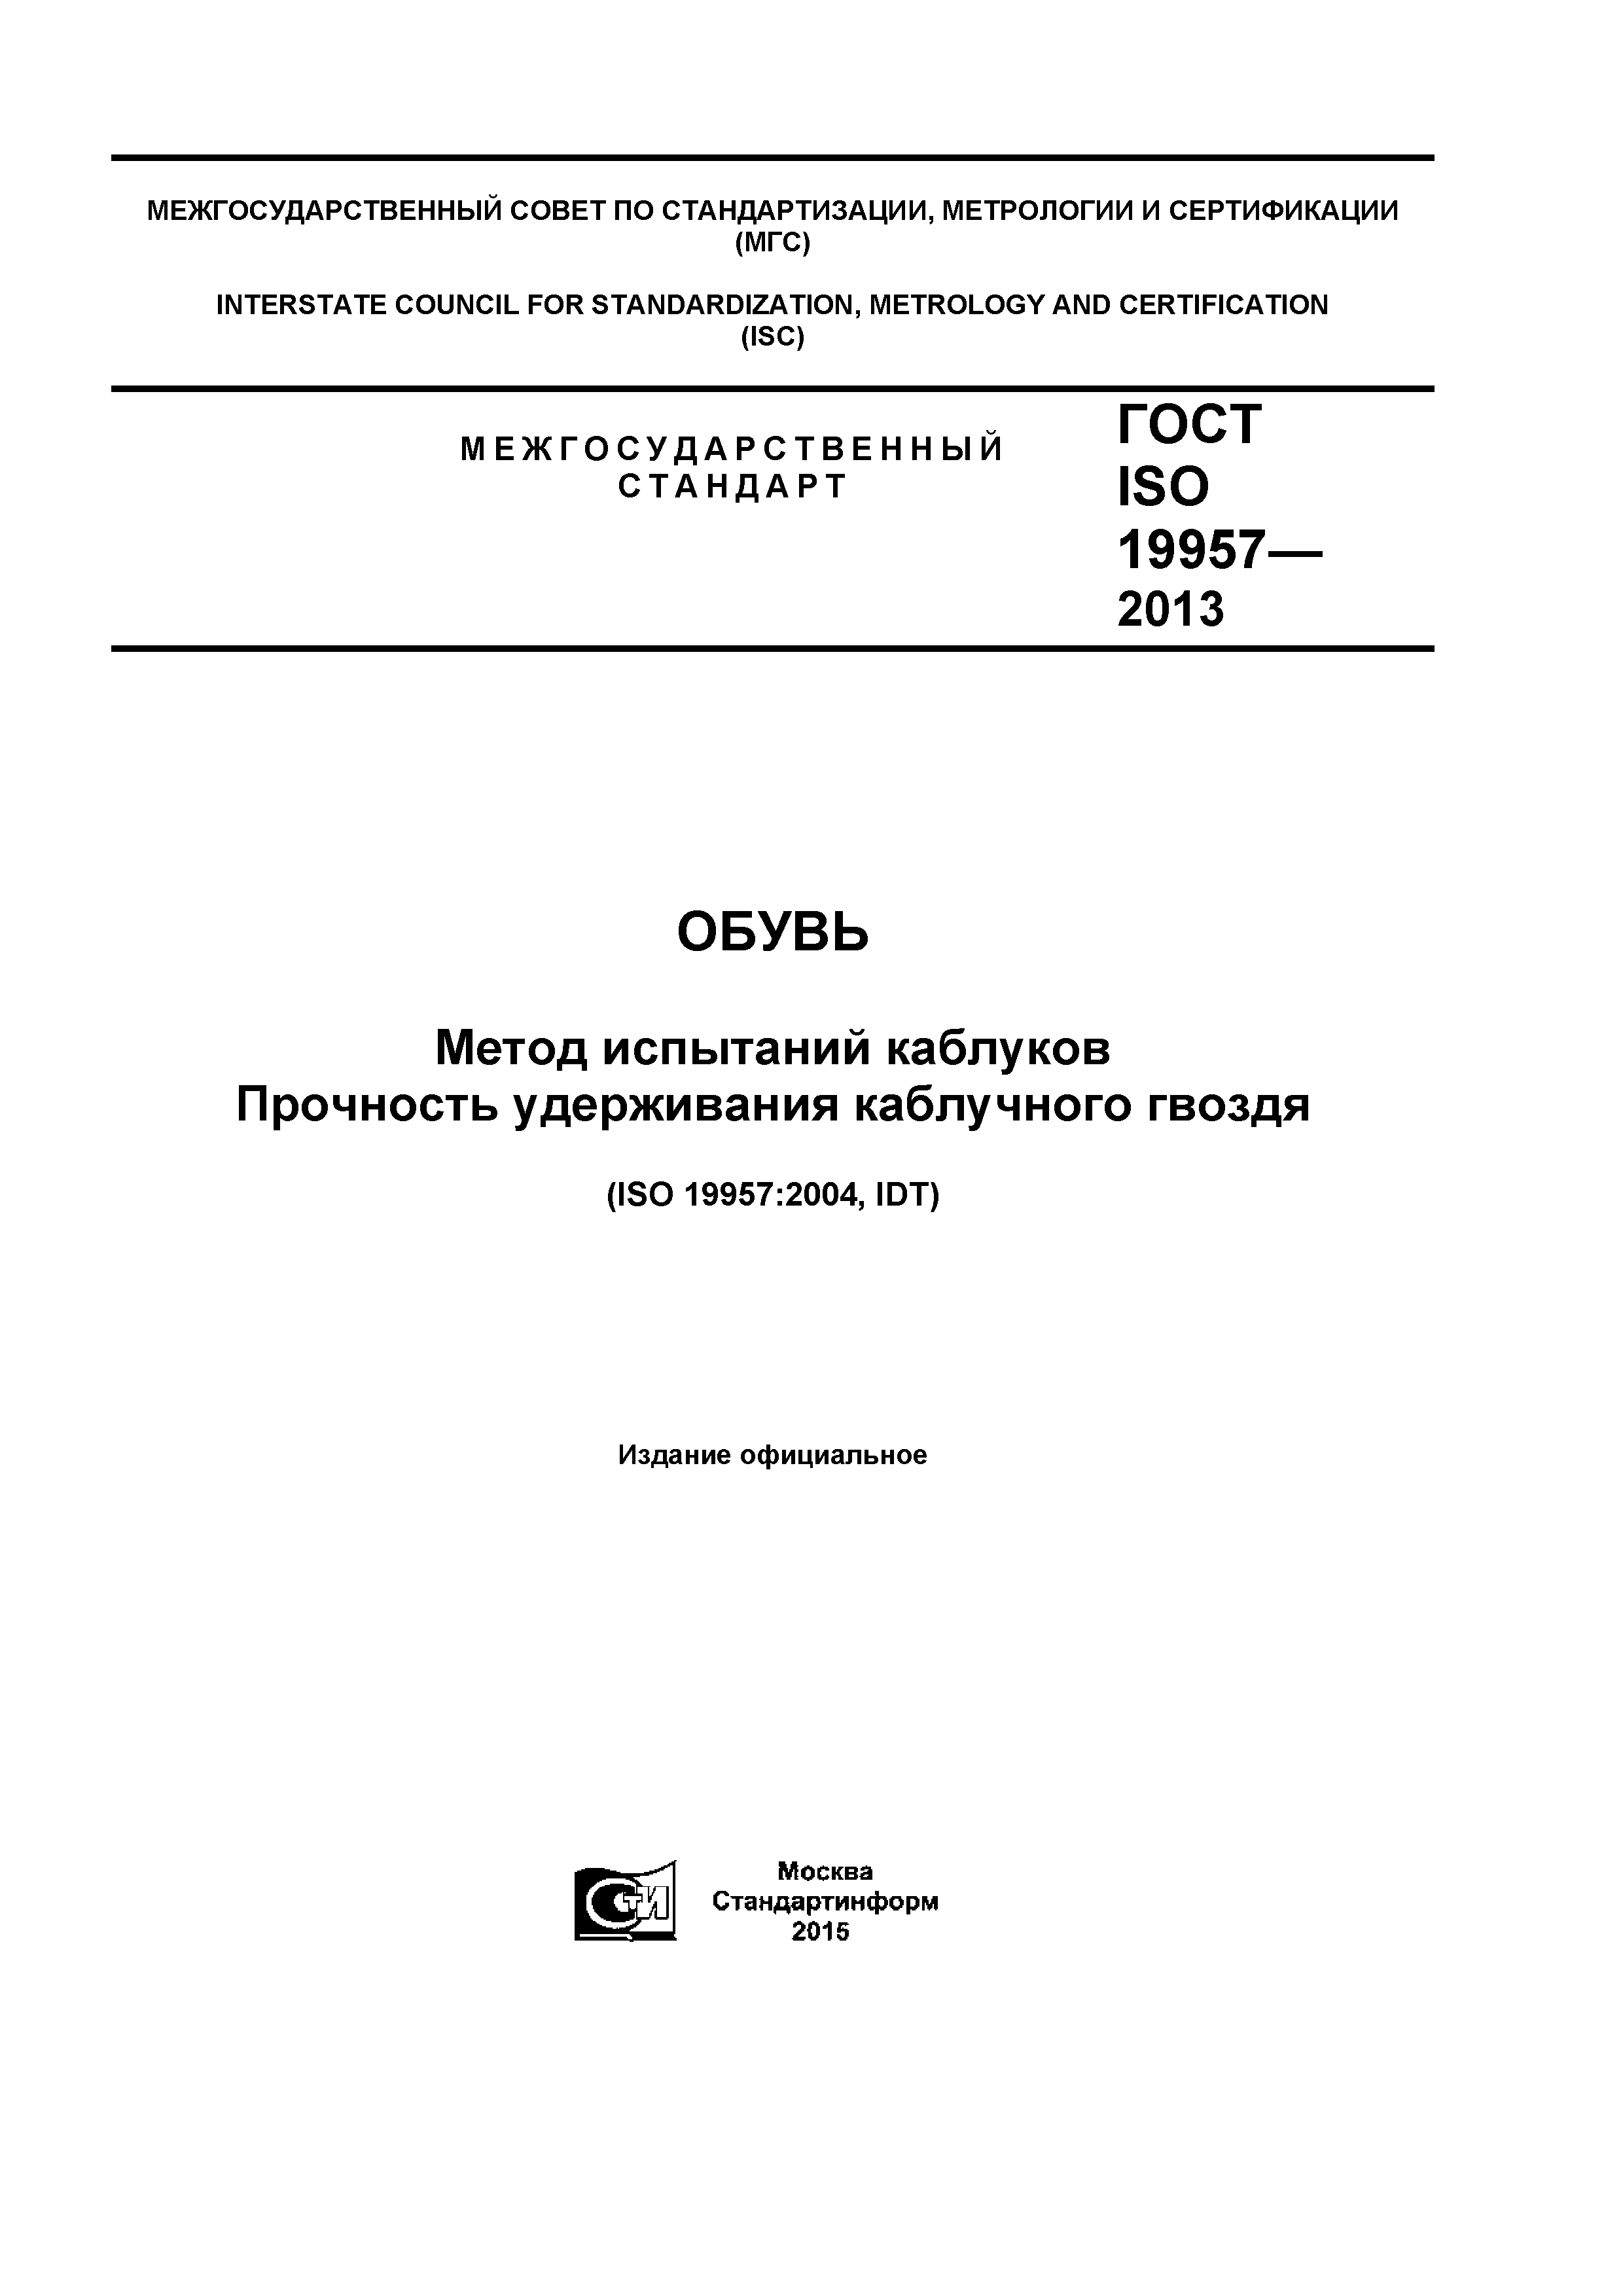 ГОСТ ISO 19957-2013